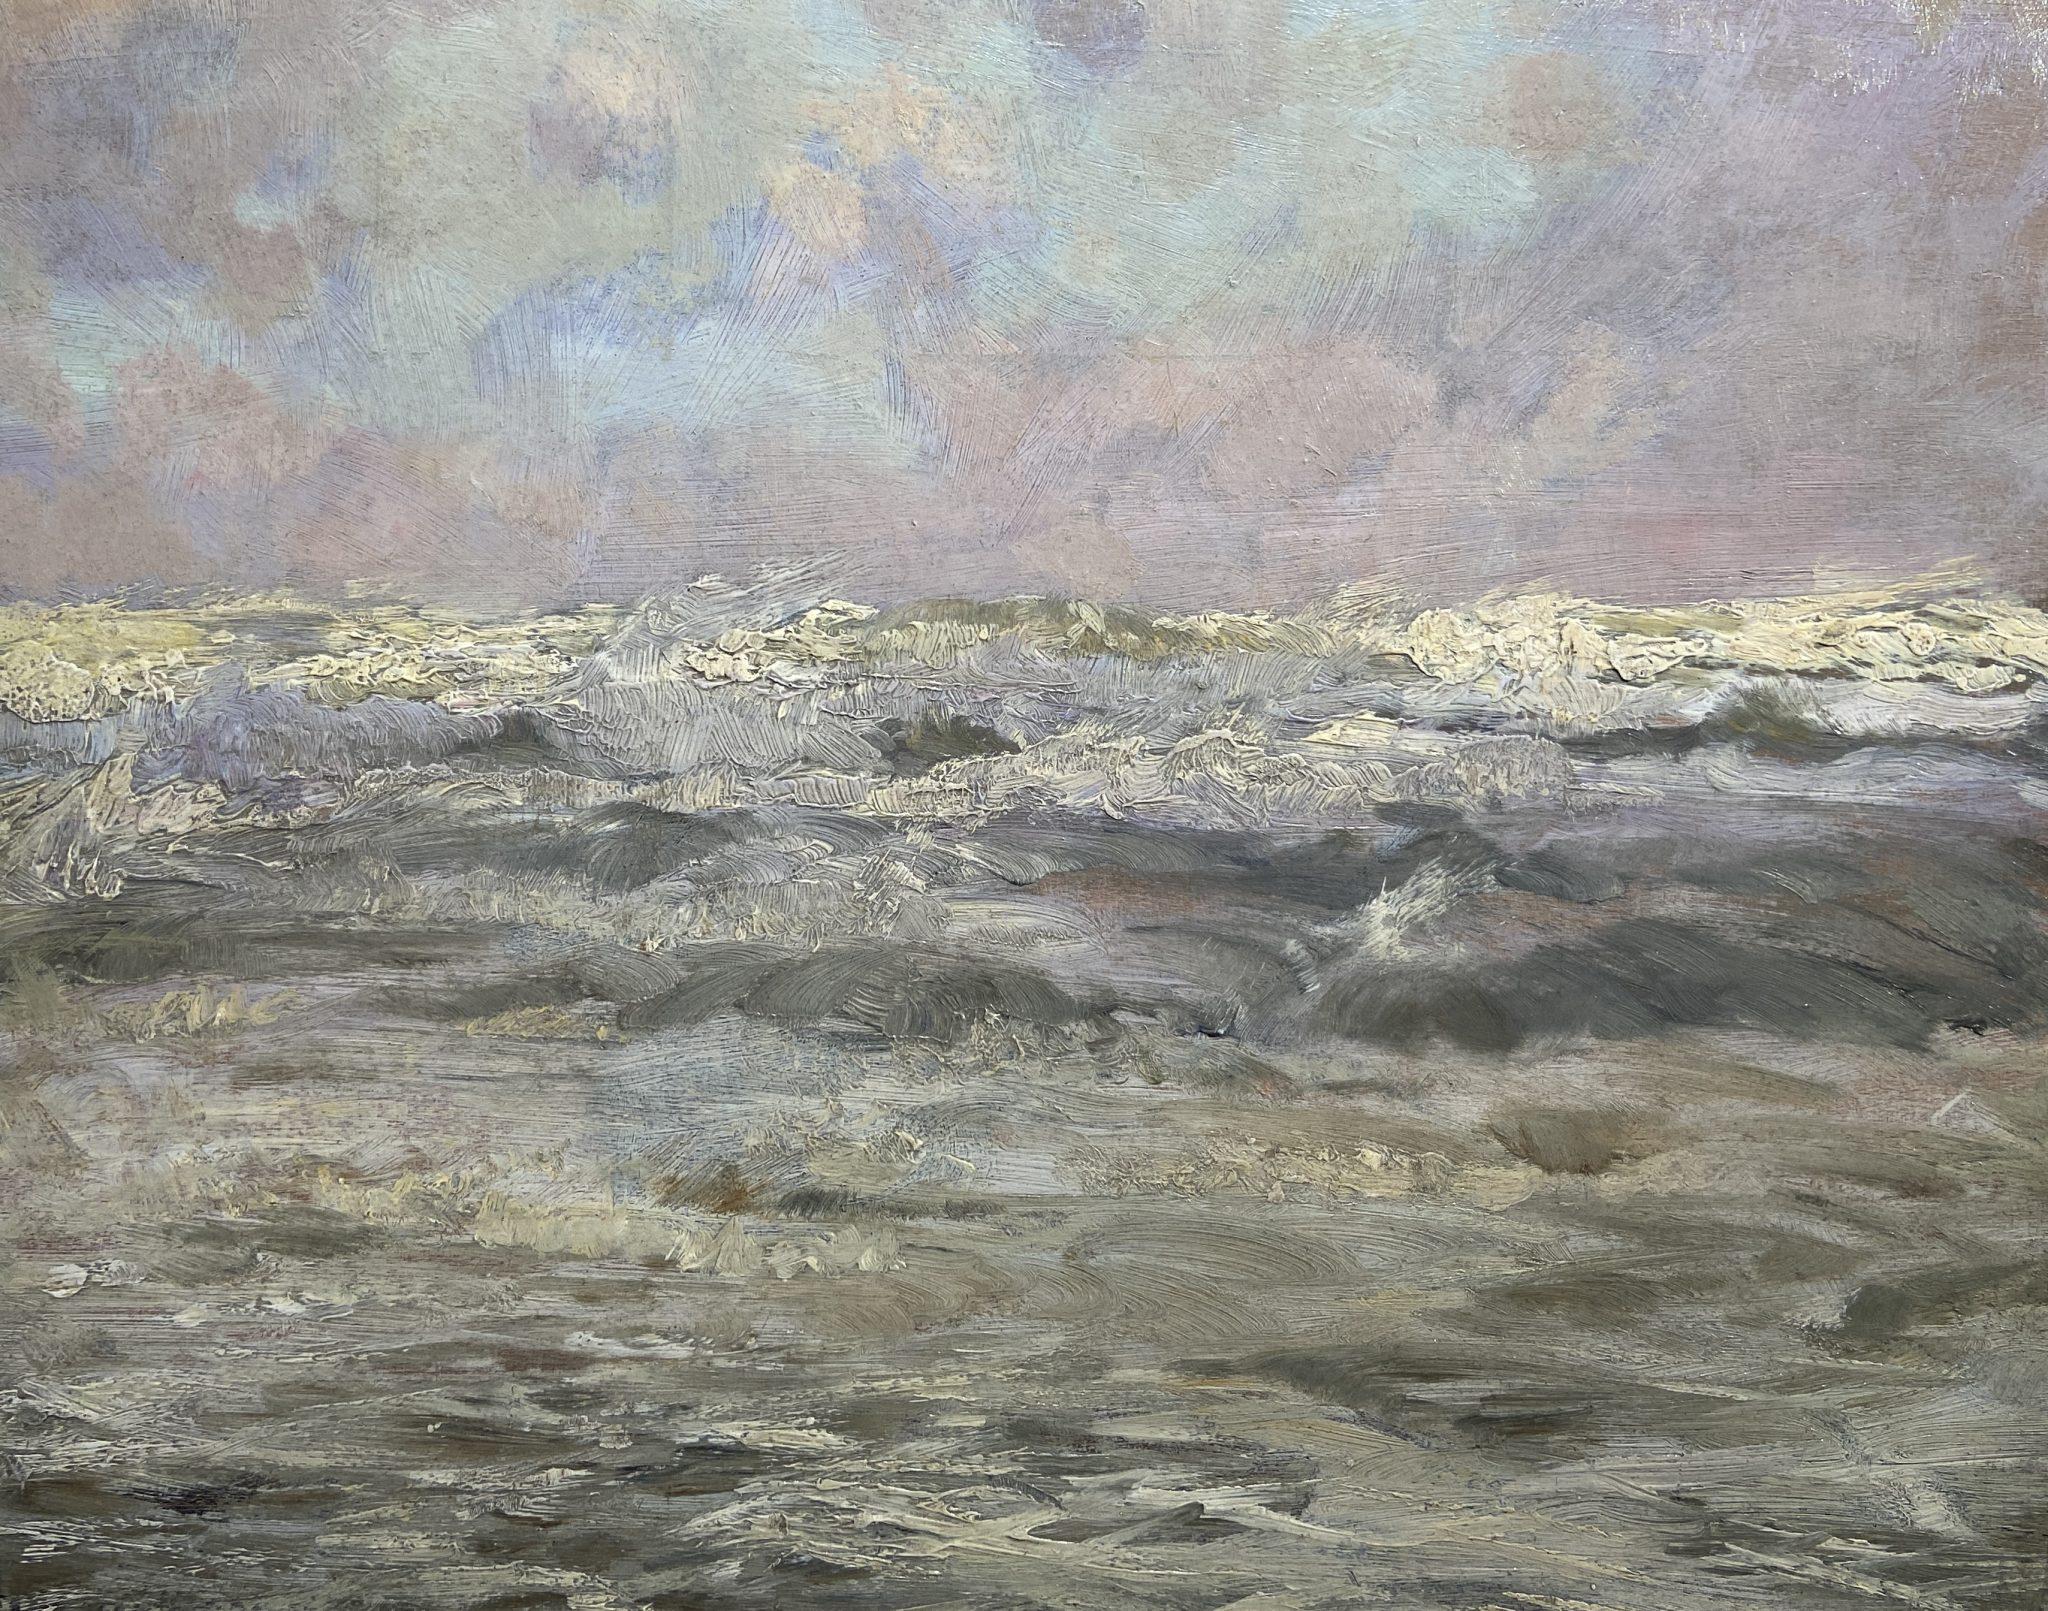 Landscape Painting Frank Lewis Emanuel - Pleine mer, fin du 19e siècle